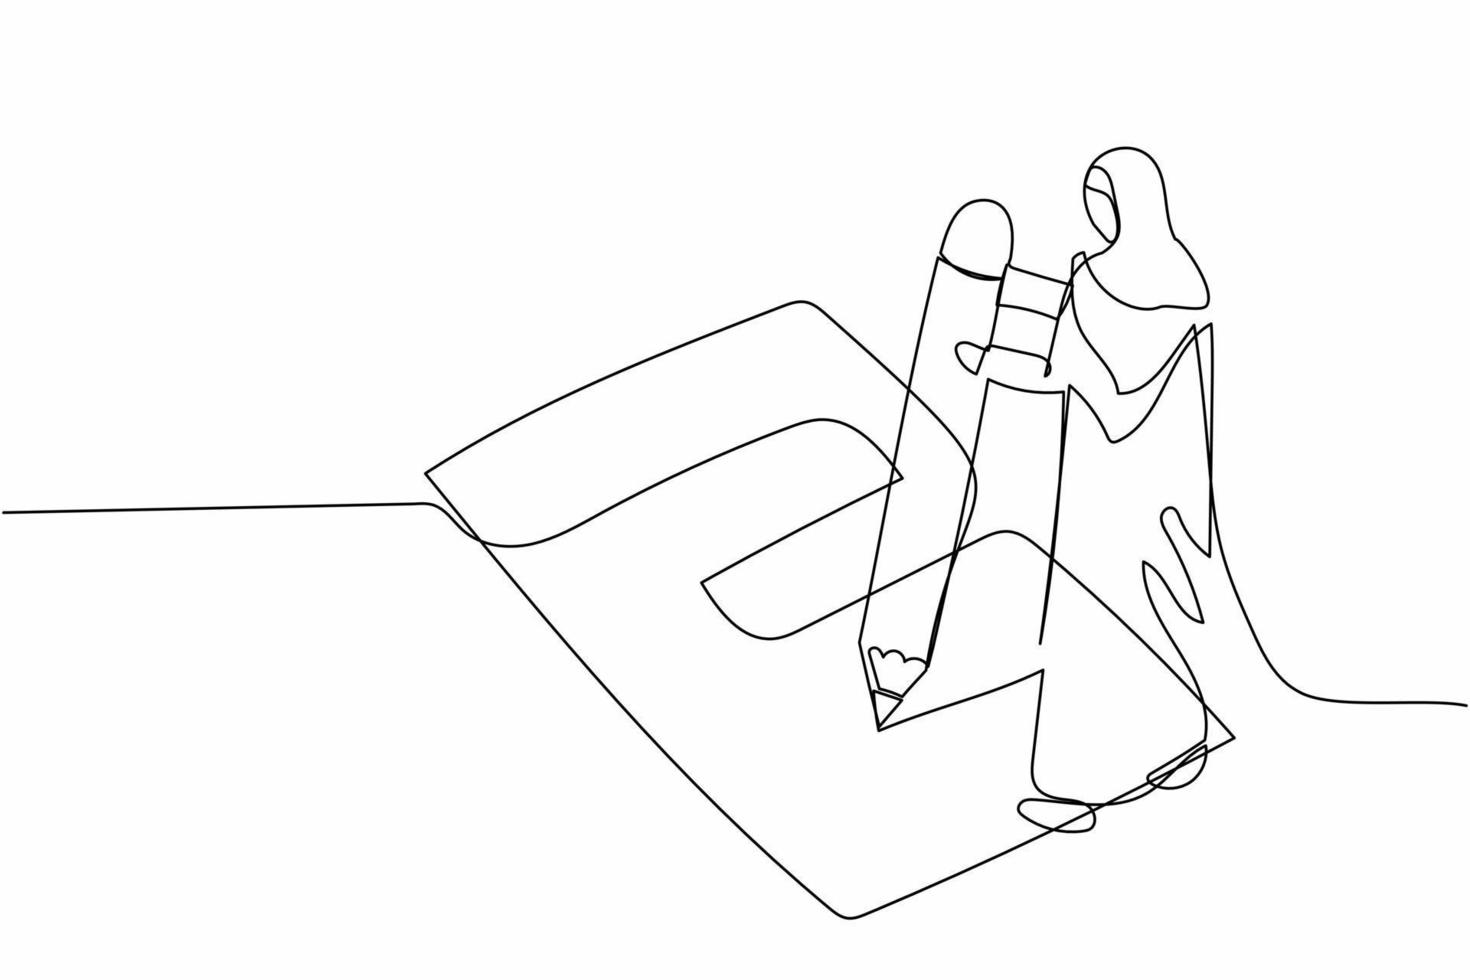 una sola línea continua dibujando una empresaria árabe escribiendo un formulario de encuesta en el suelo. la gerente llenó la lista de verificación en el portapapeles con un lápiz gigante. ilustración de vector de diseño gráfico de dibujo de una línea